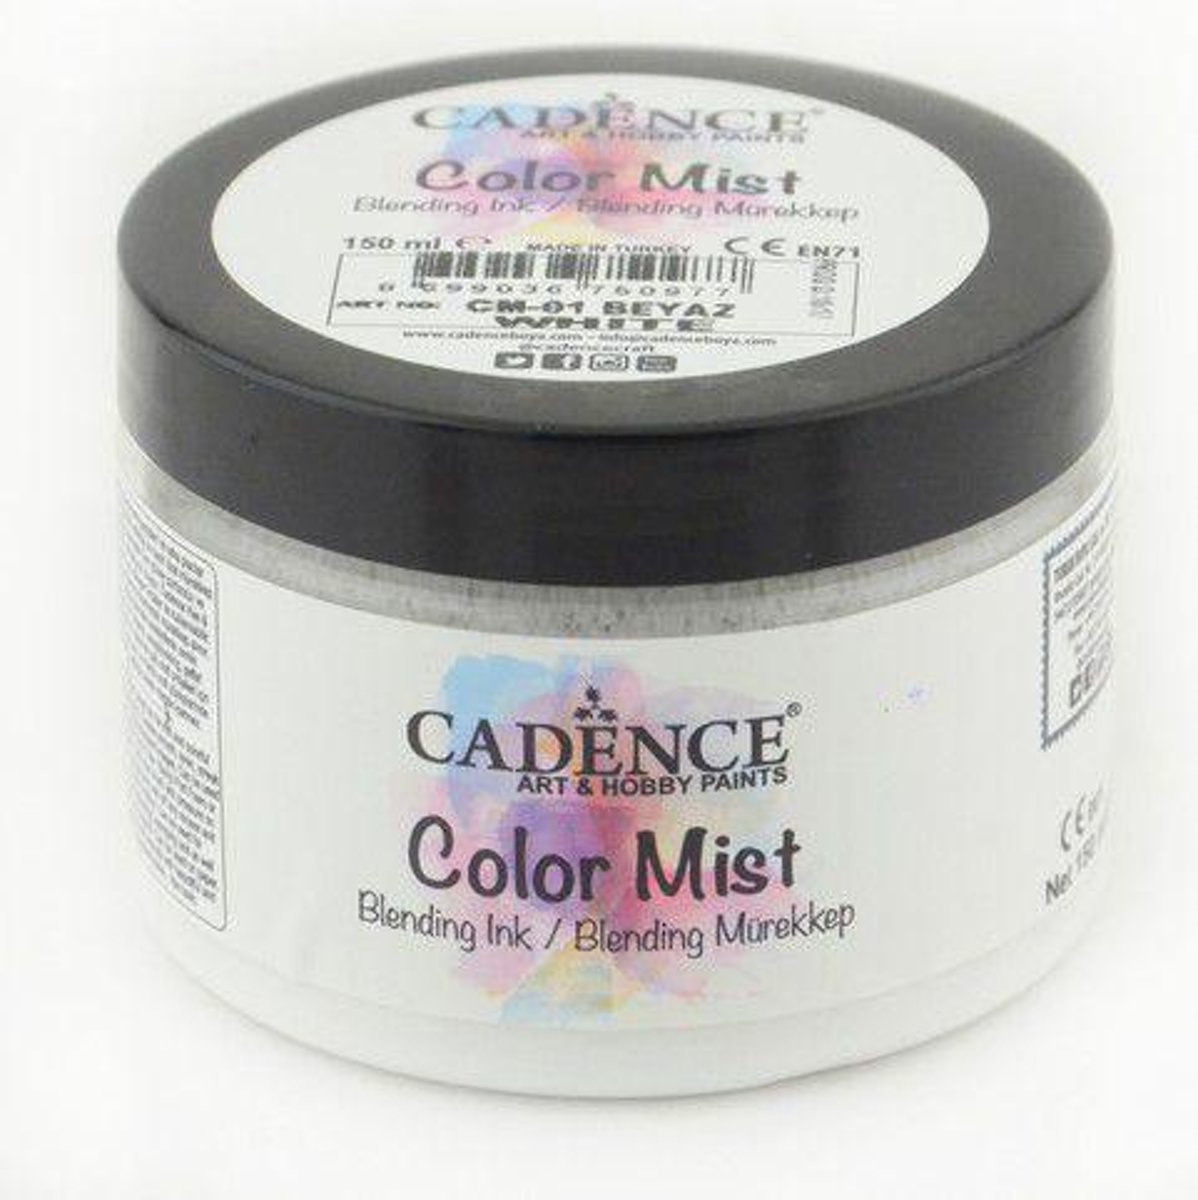 Cadence Color Mist Bending Inkt verf Wit 01 073 0001 0150  150 ml